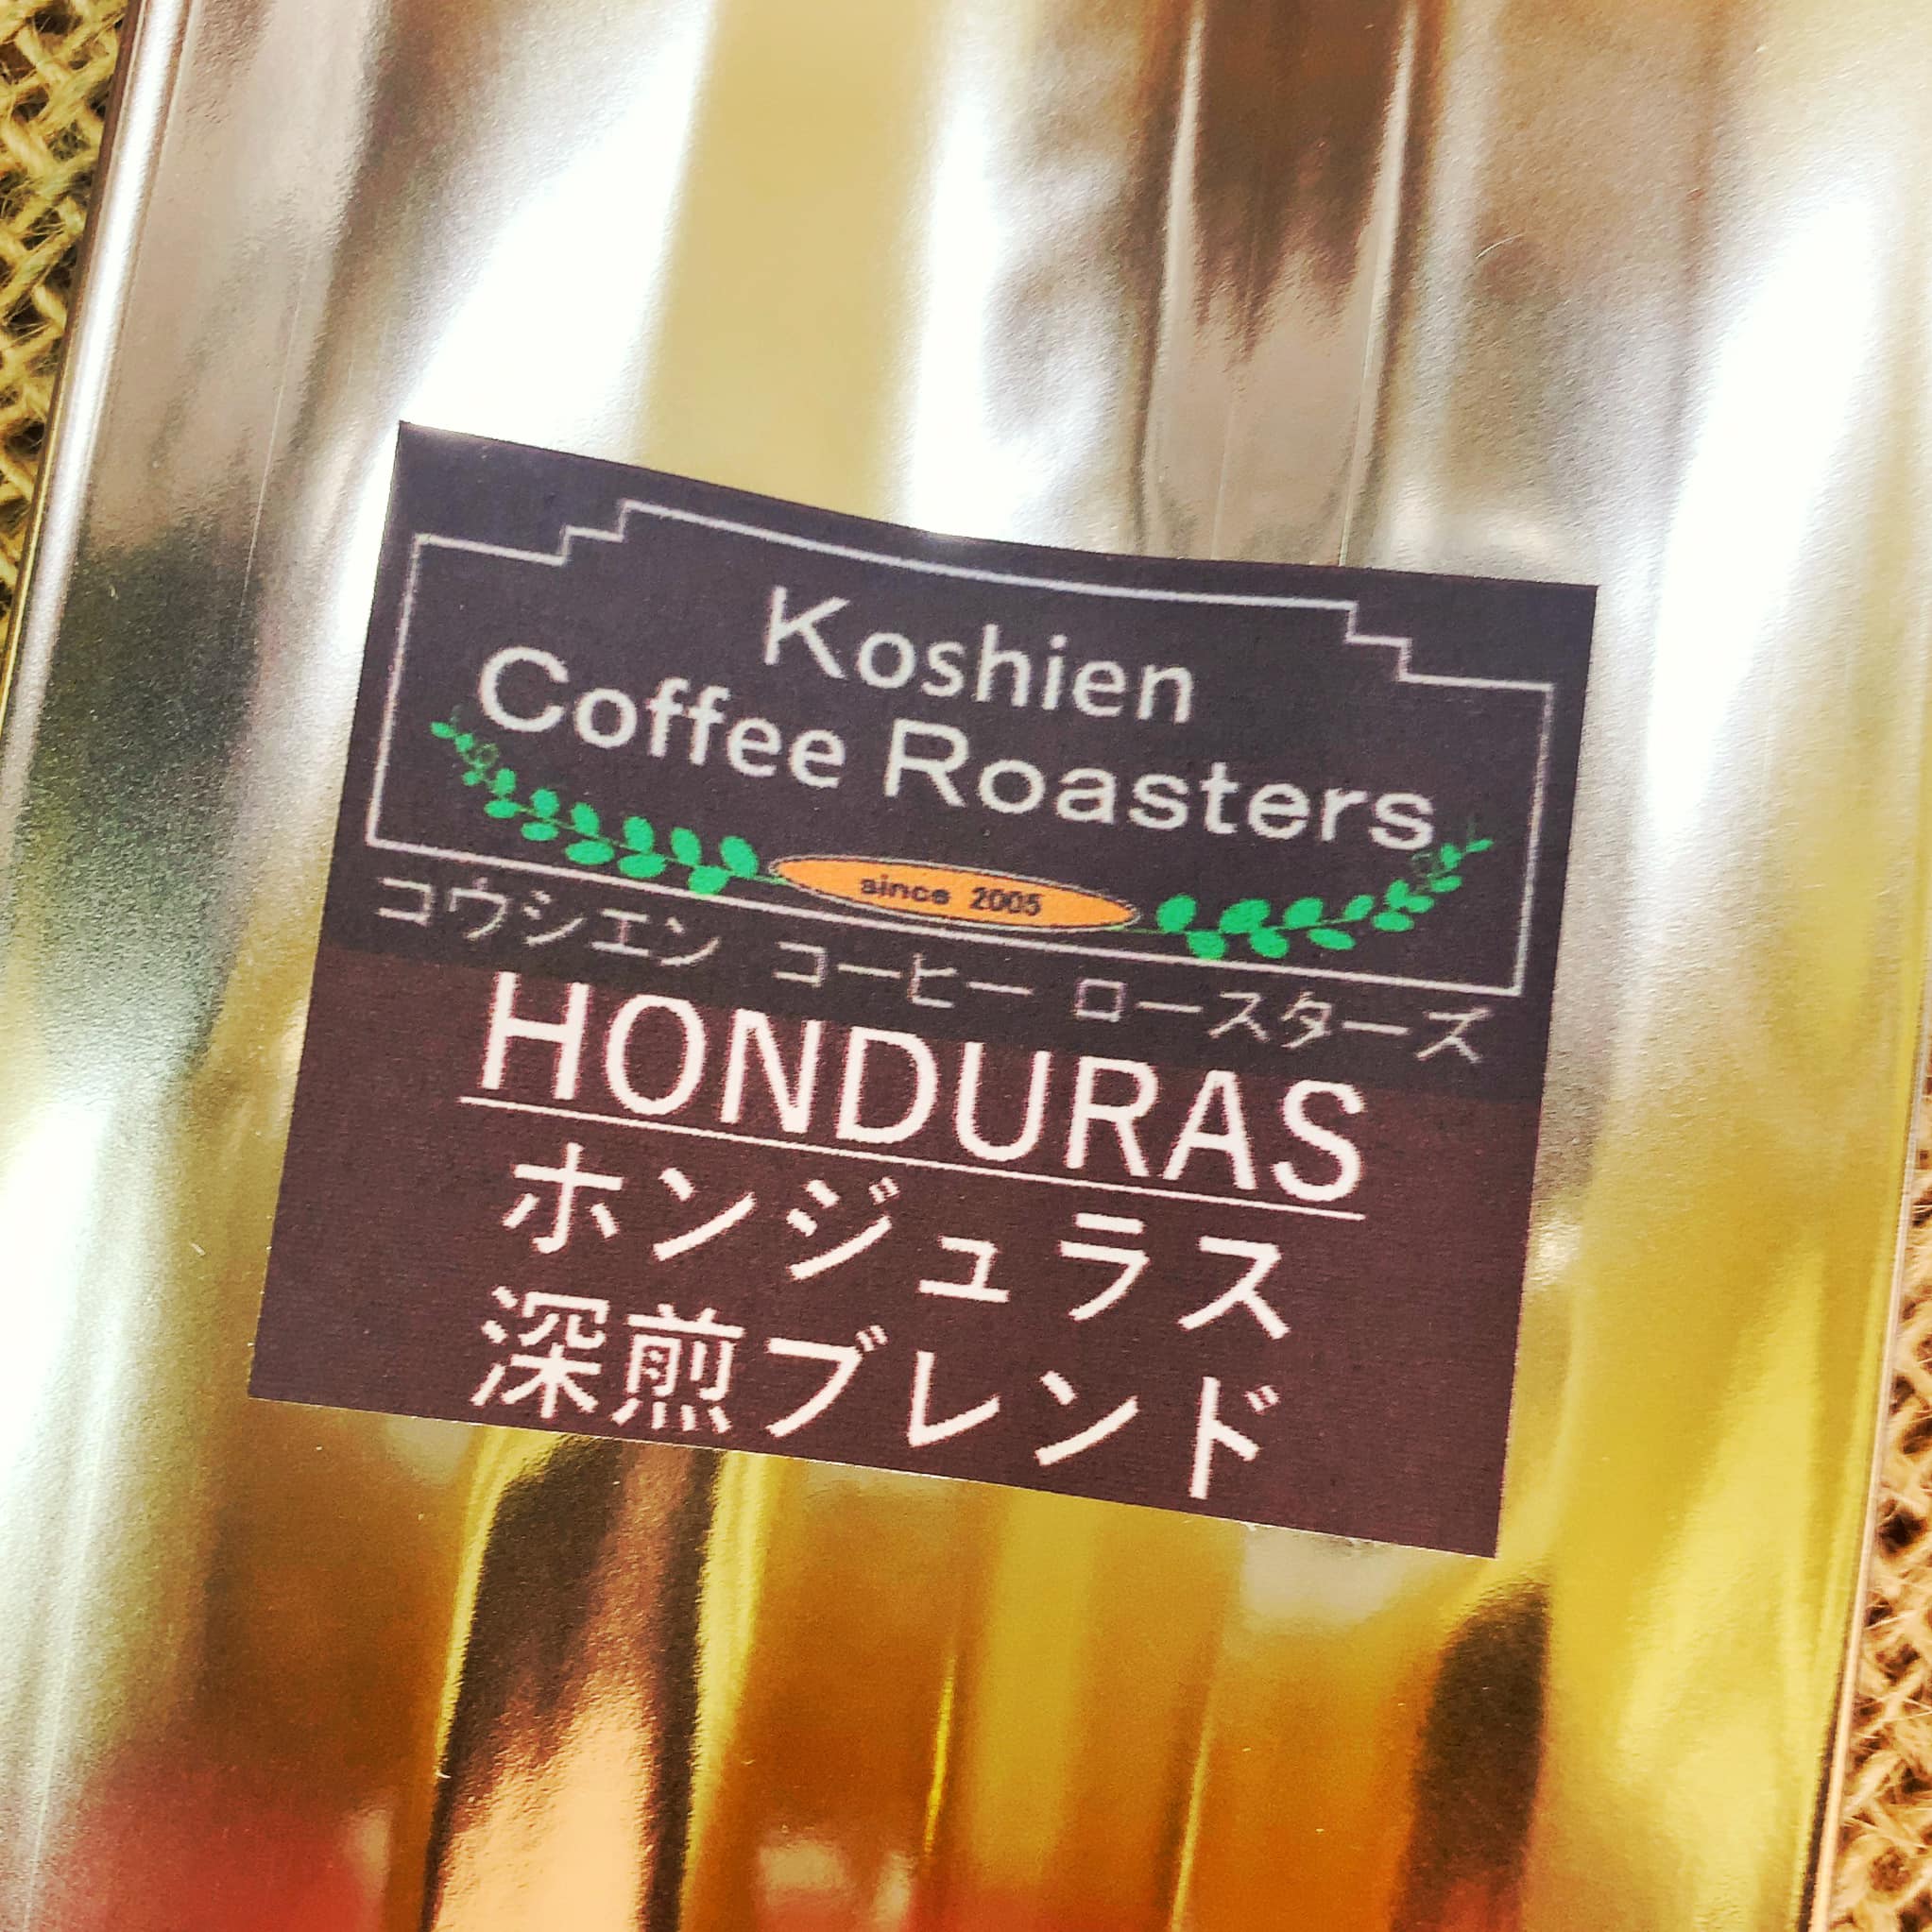 ホンジュラス深煎りブレンド 400g コーヒー豆 送料無料 コーヒー 珈琲 メール便 日時指定代引不可 10日ほどかかることがあります。